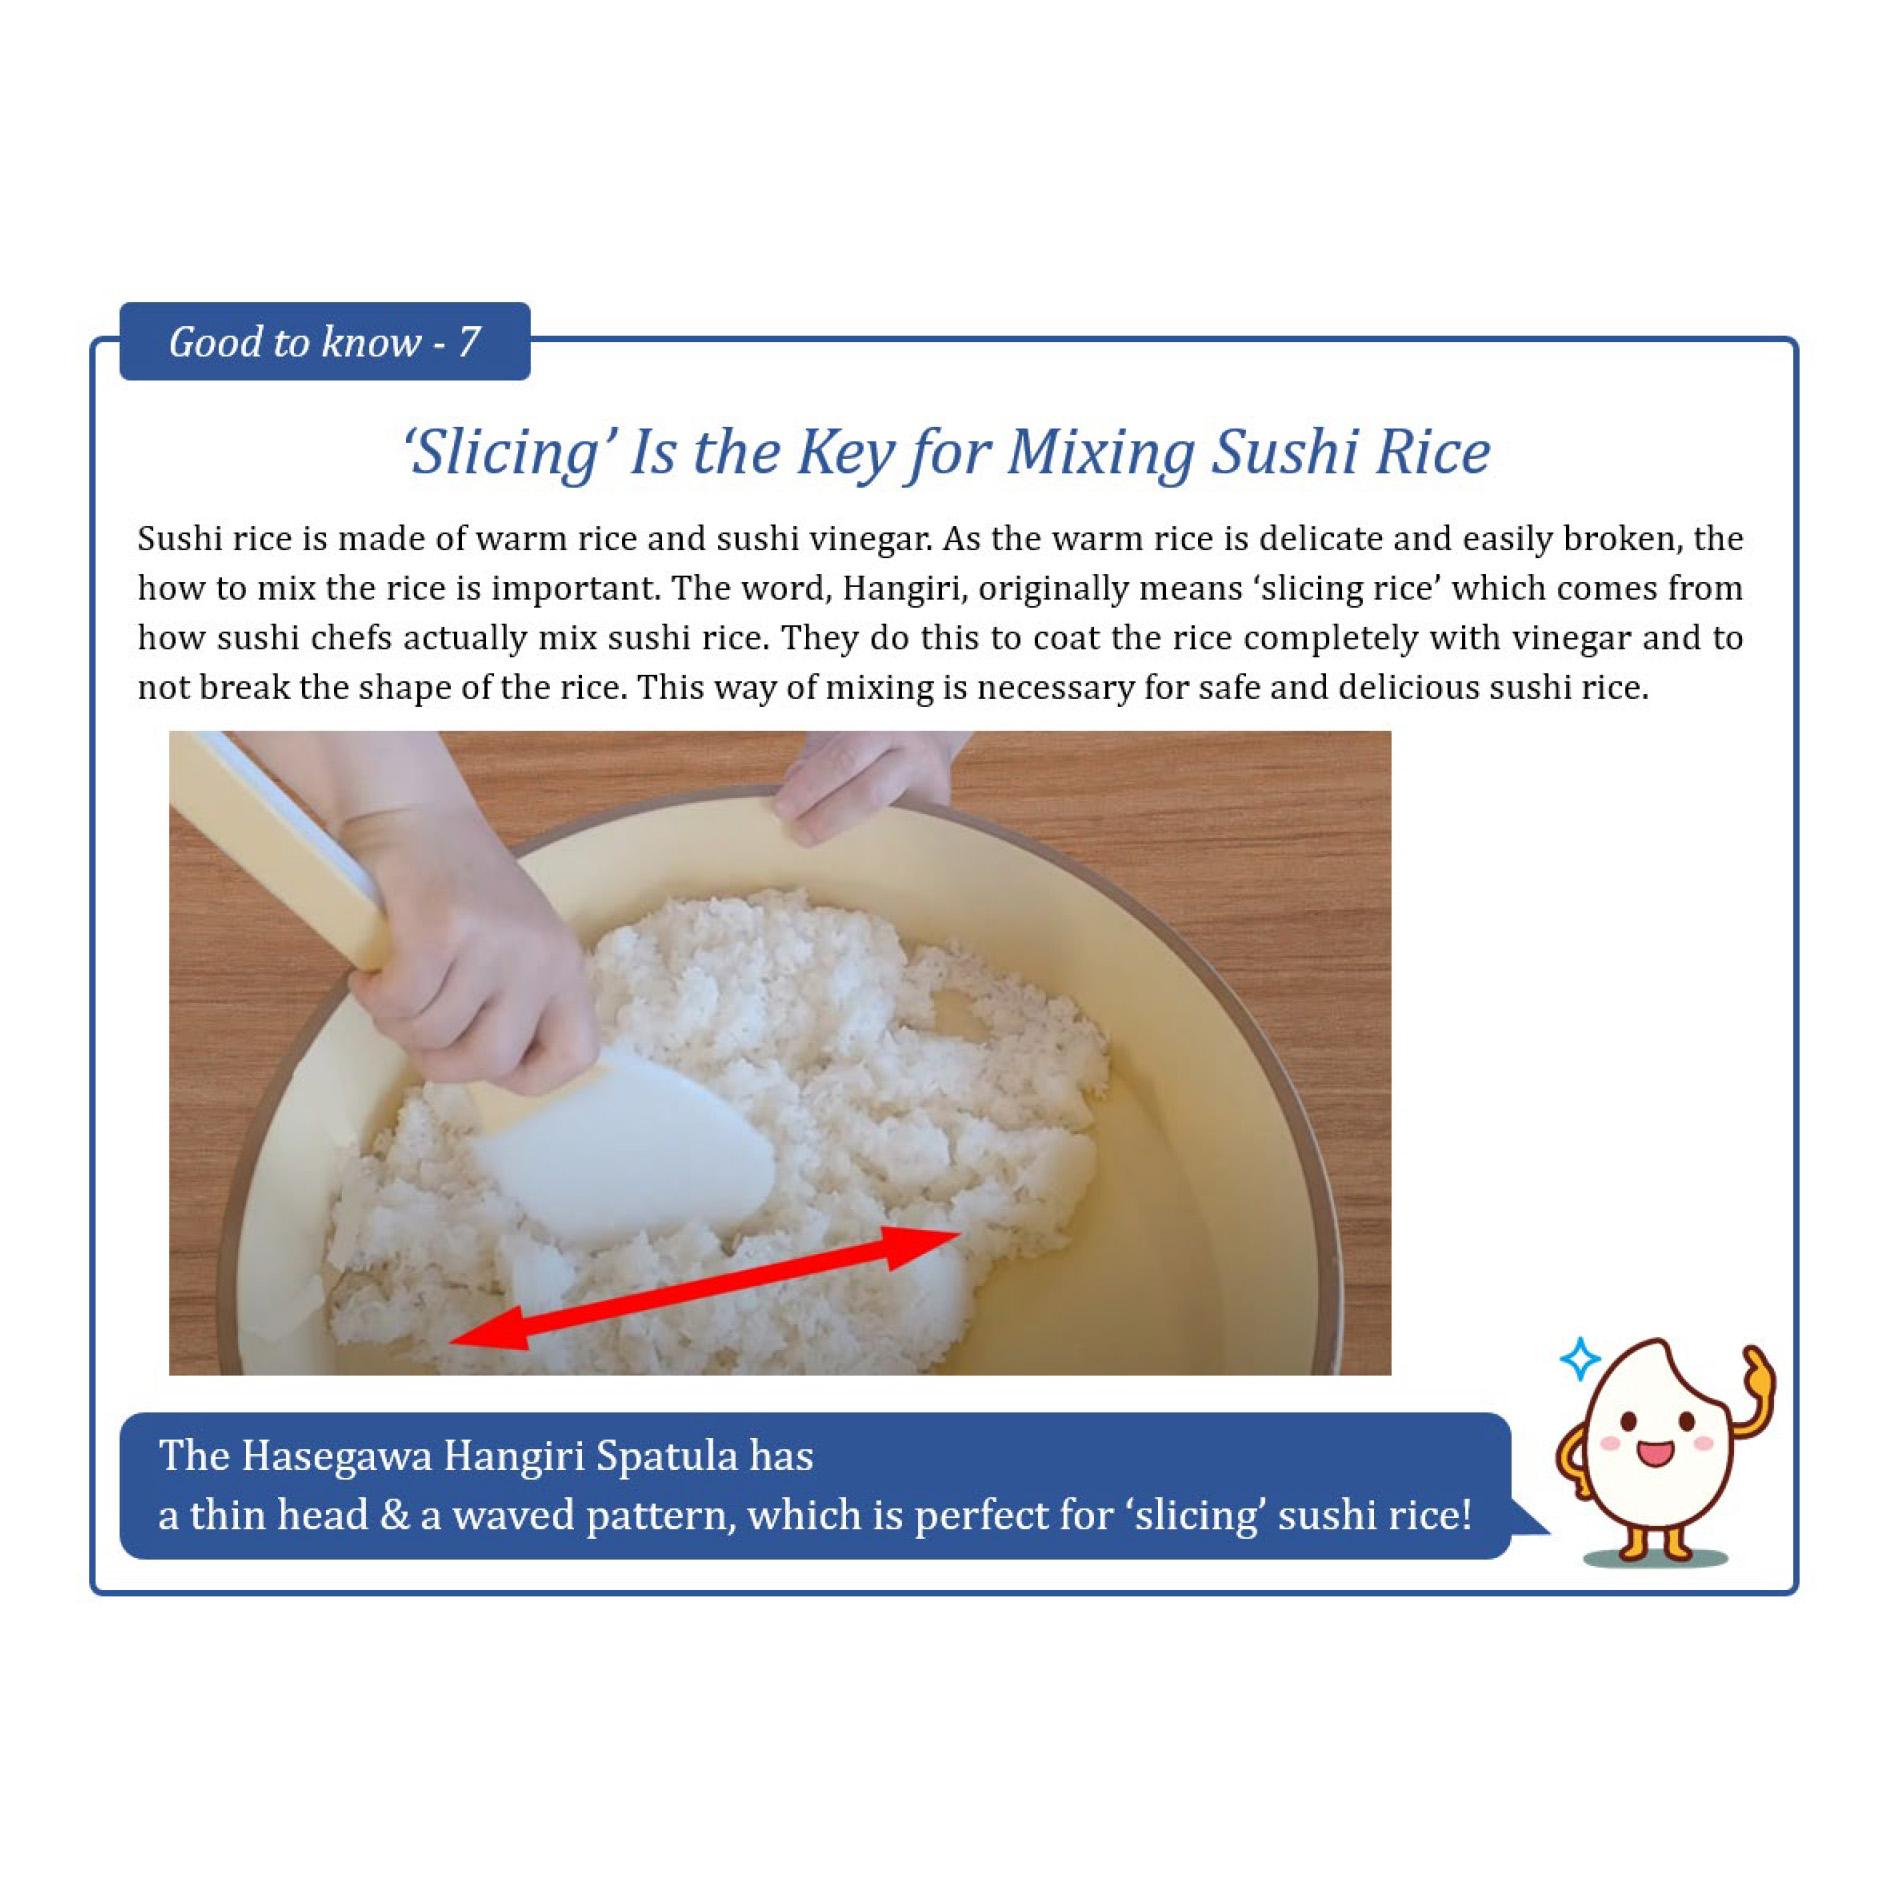 מרית האנגירי אנטי-בקטריאלית מקצועית 40 ס״מ לערבוב אורז סושי הסגאווה יפן (FSOG-40)